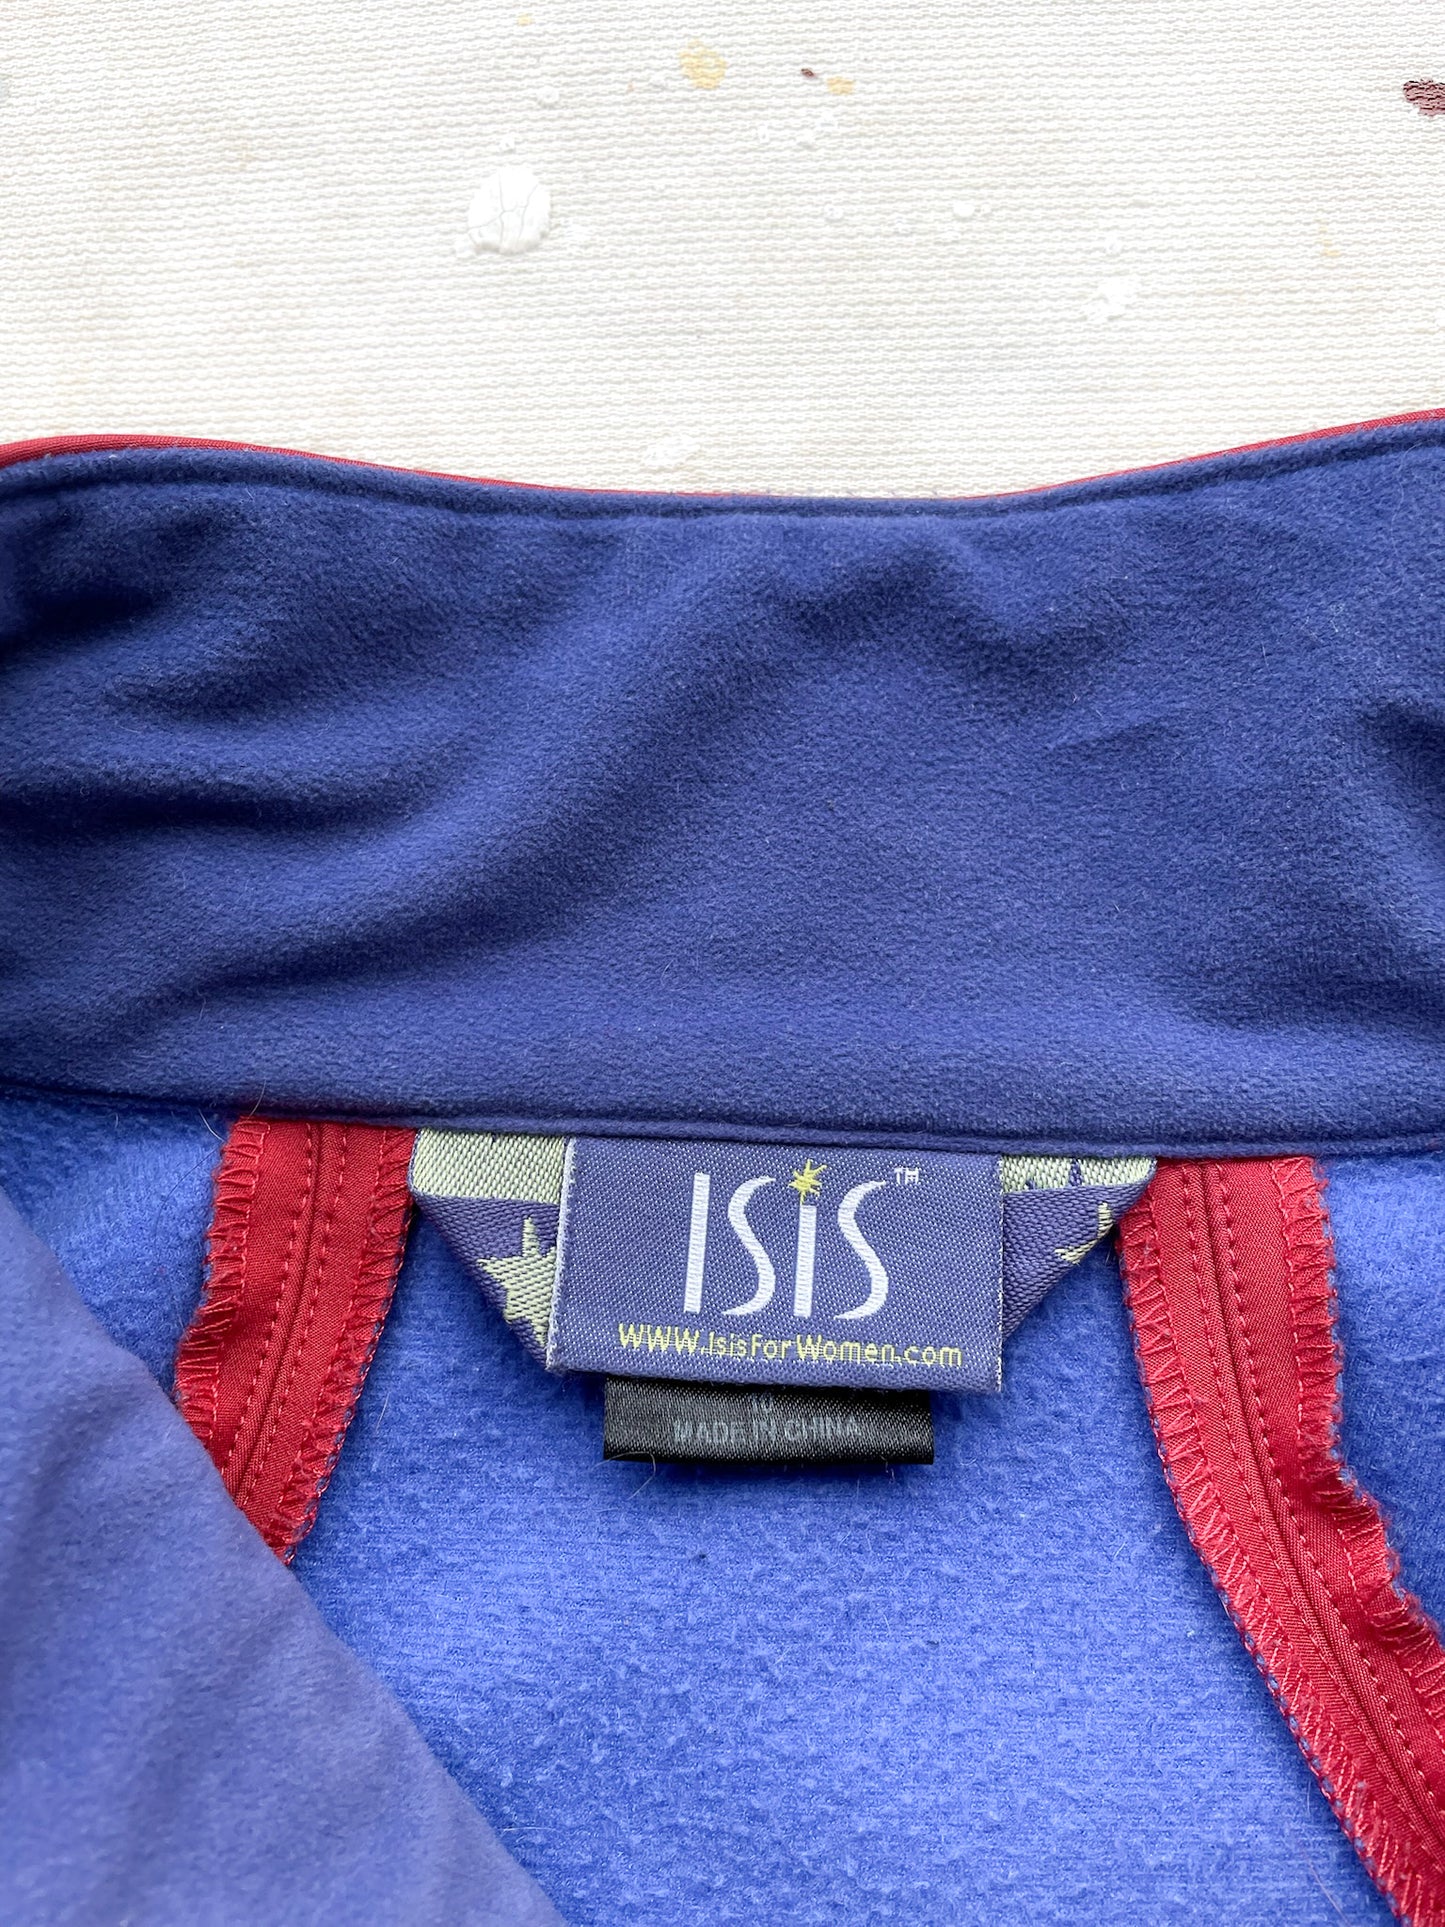 ISIS Softshell Jacket—[M]